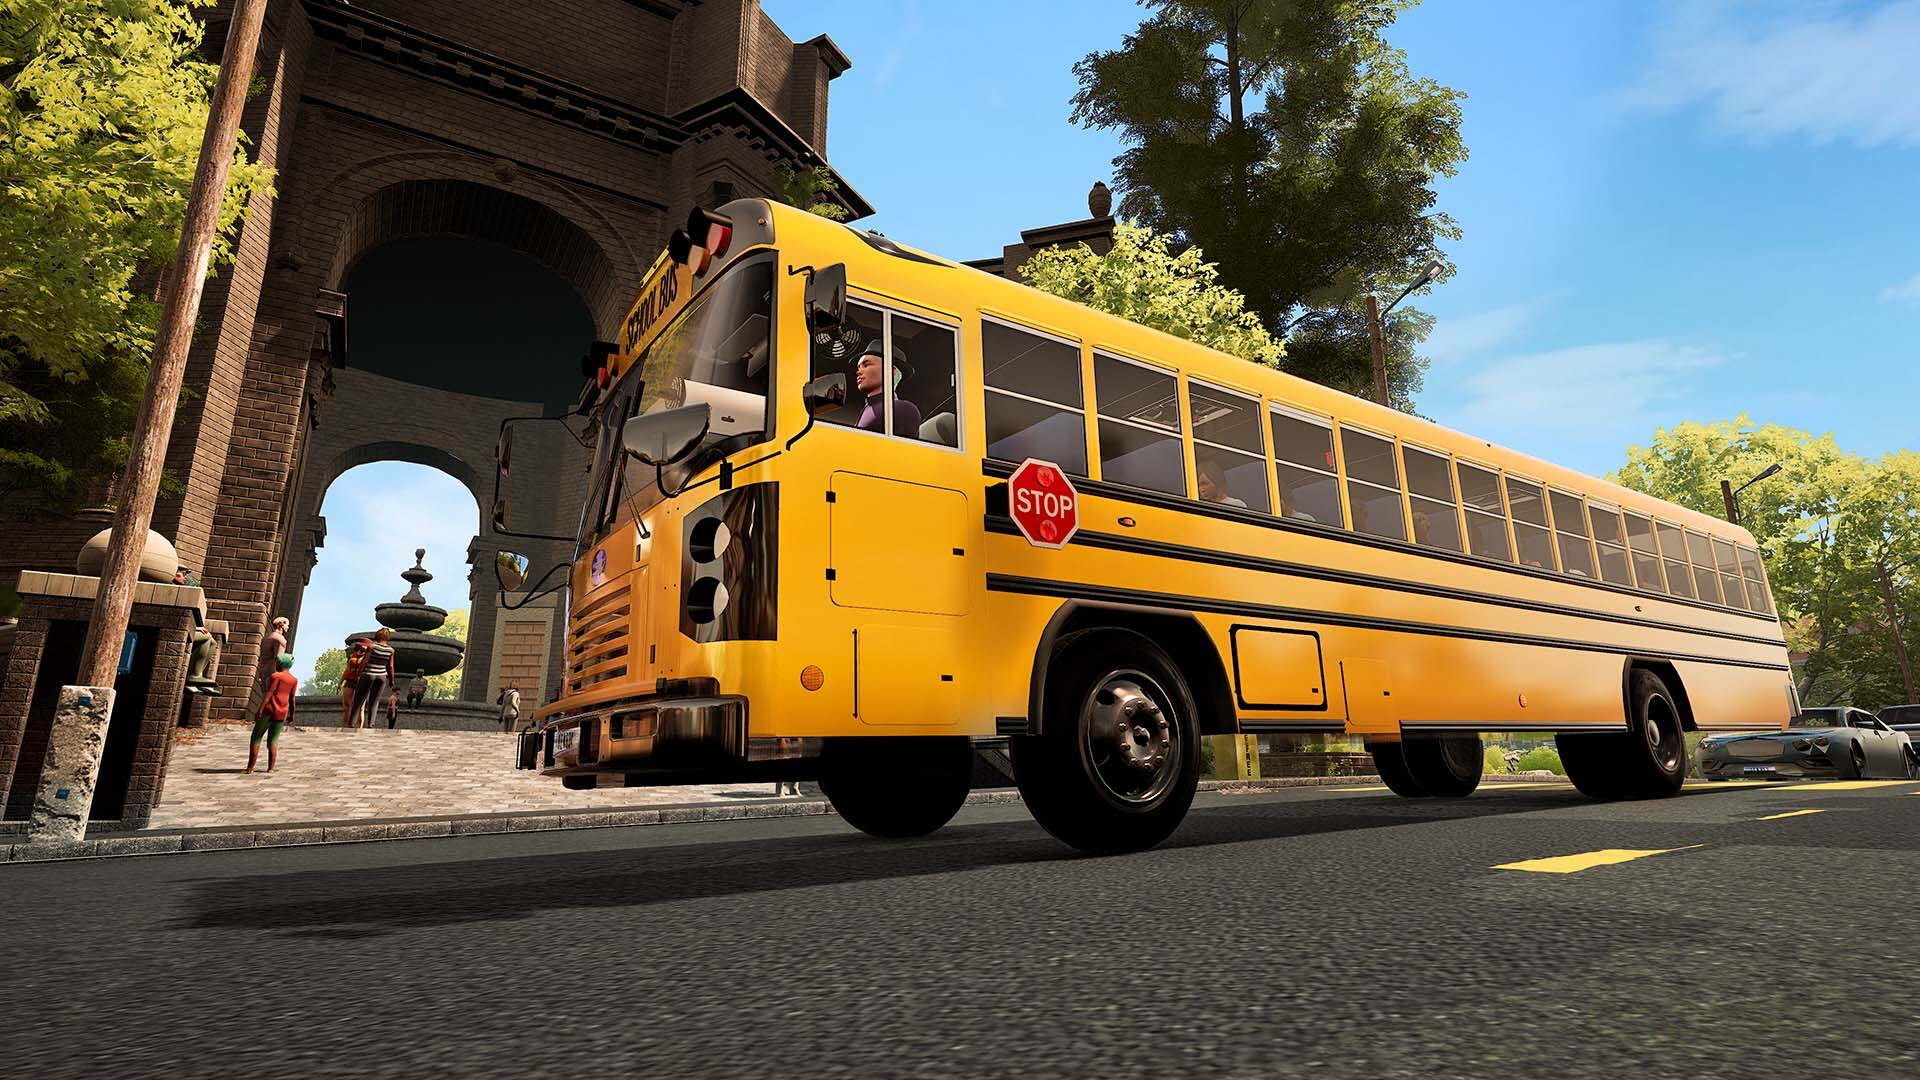 Bus Simulator 21 Next Stop - Season Pass DLC Steam CD Key 18.61 $